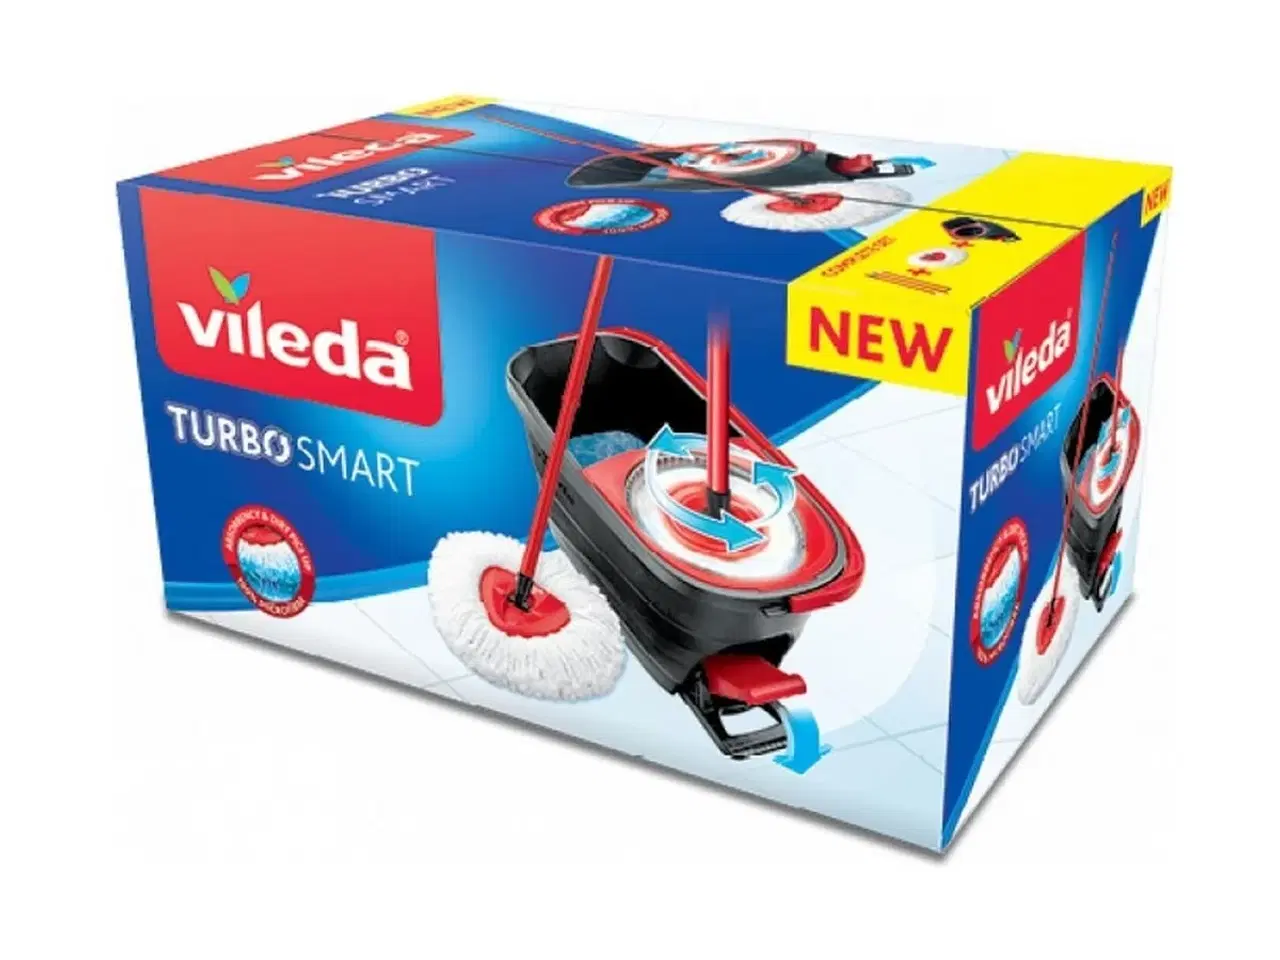 Billede 3 - Gulvmoppe med spand Vileda Turbo Smart